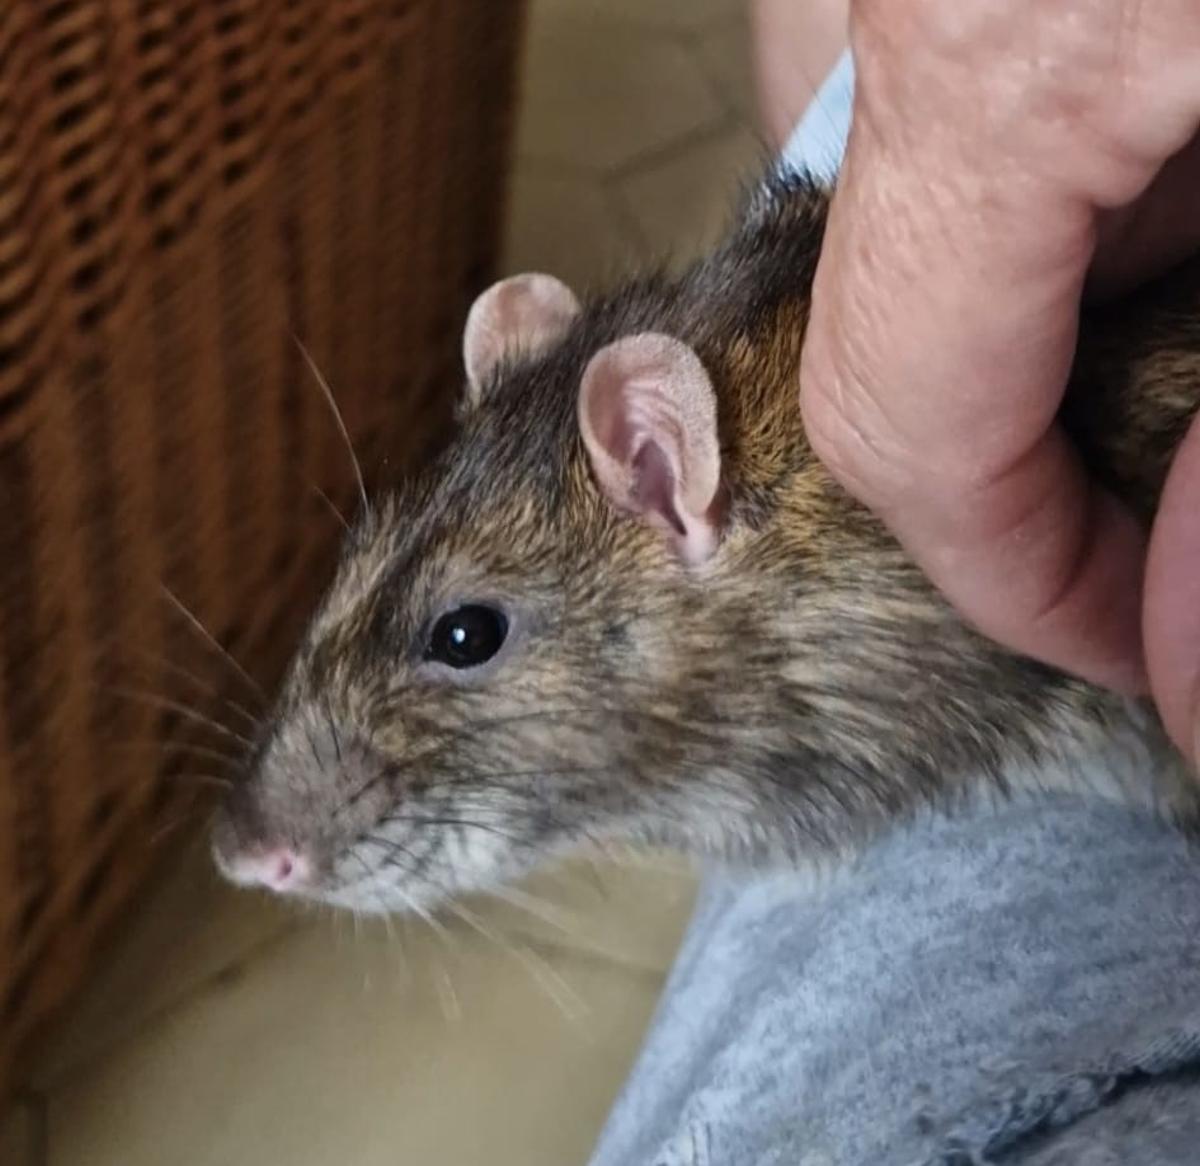 Sugar, la rata mascota de Marina, recibiendo mimos en el regazo de su dueña